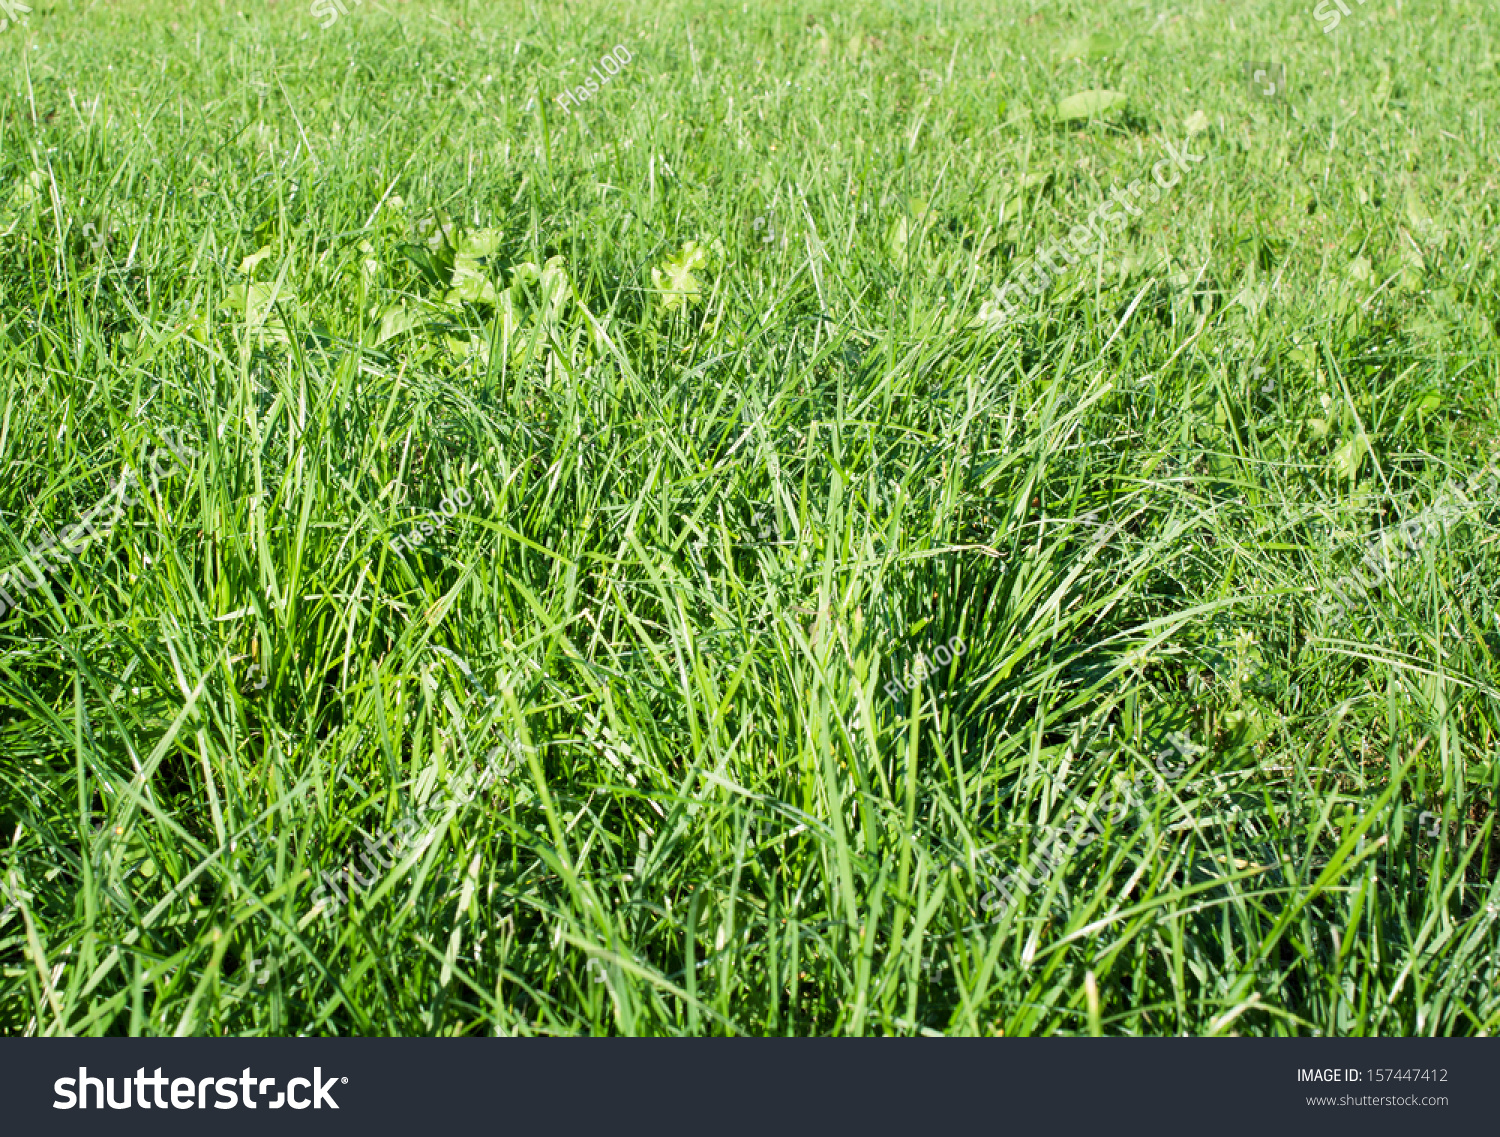 dewy green grass field on a garden #157447412